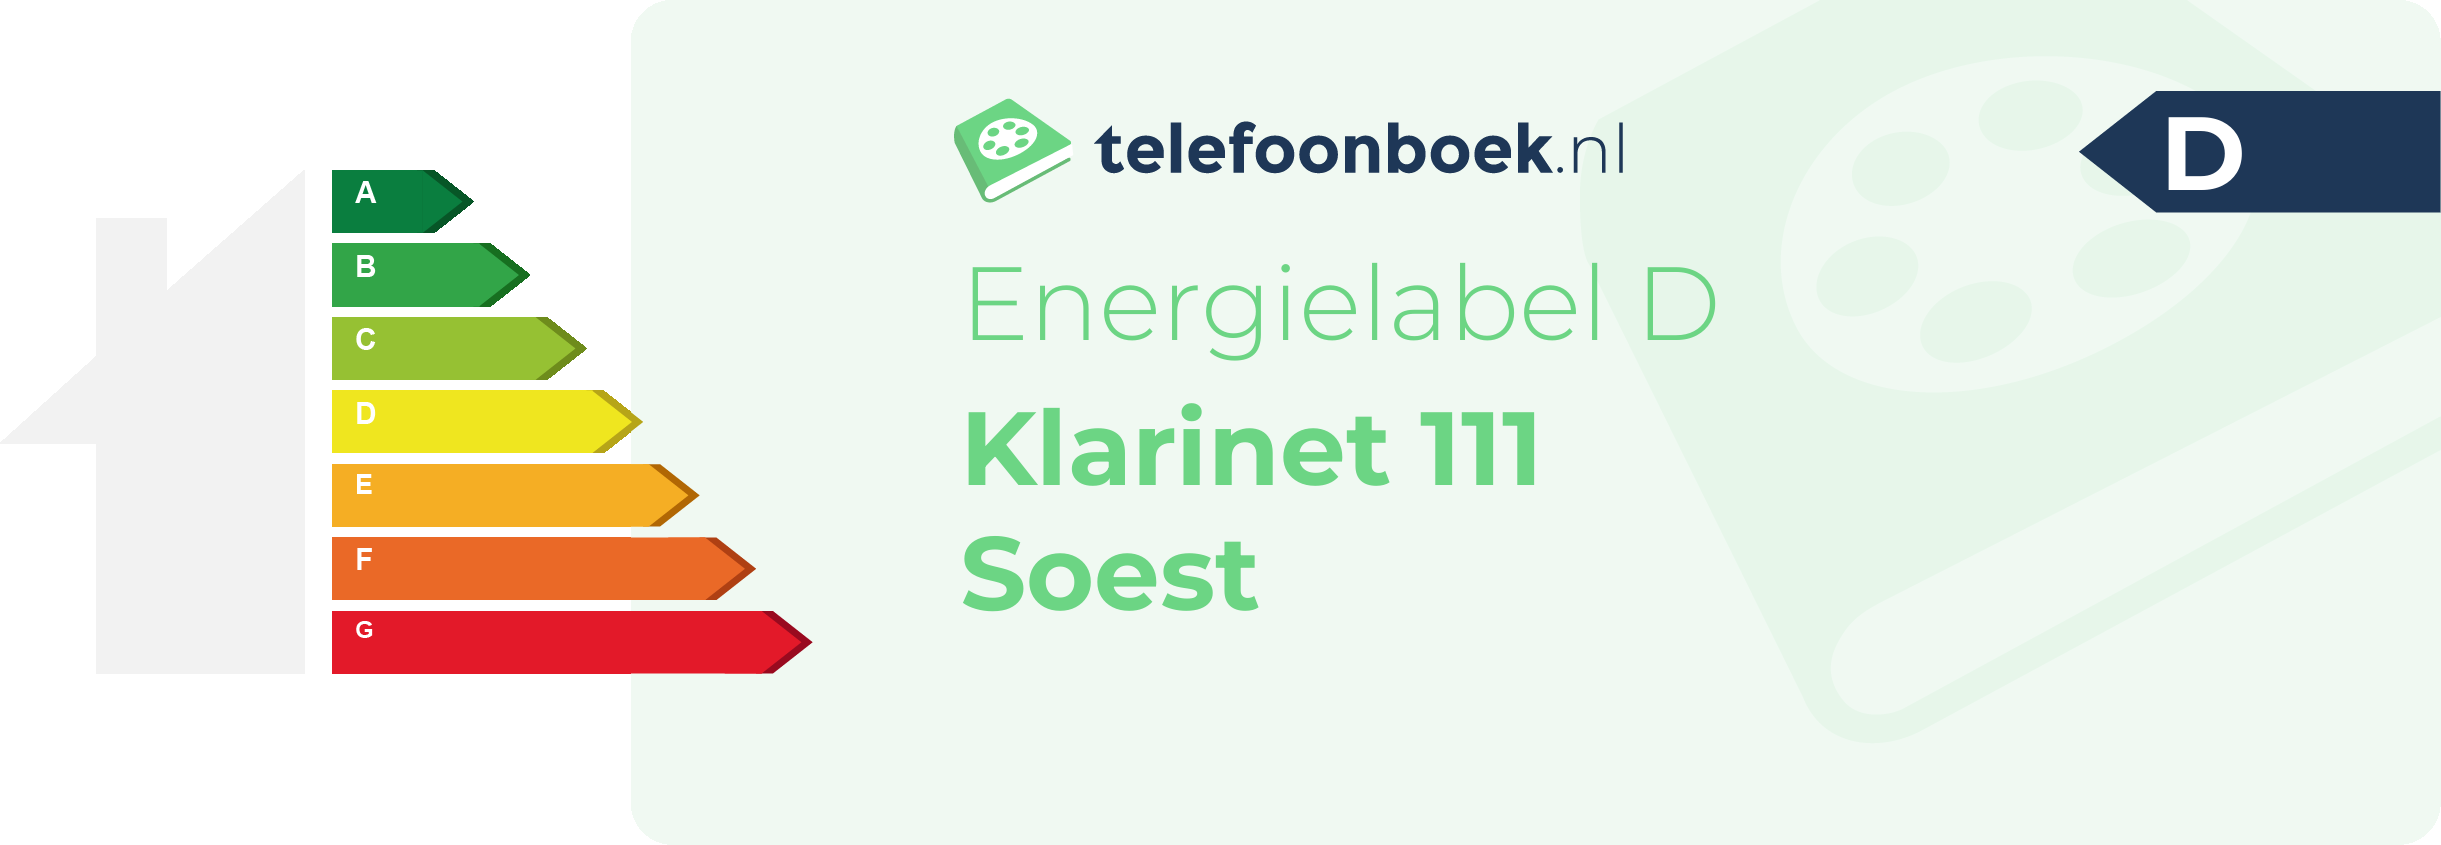 Energielabel Klarinet 111 Soest